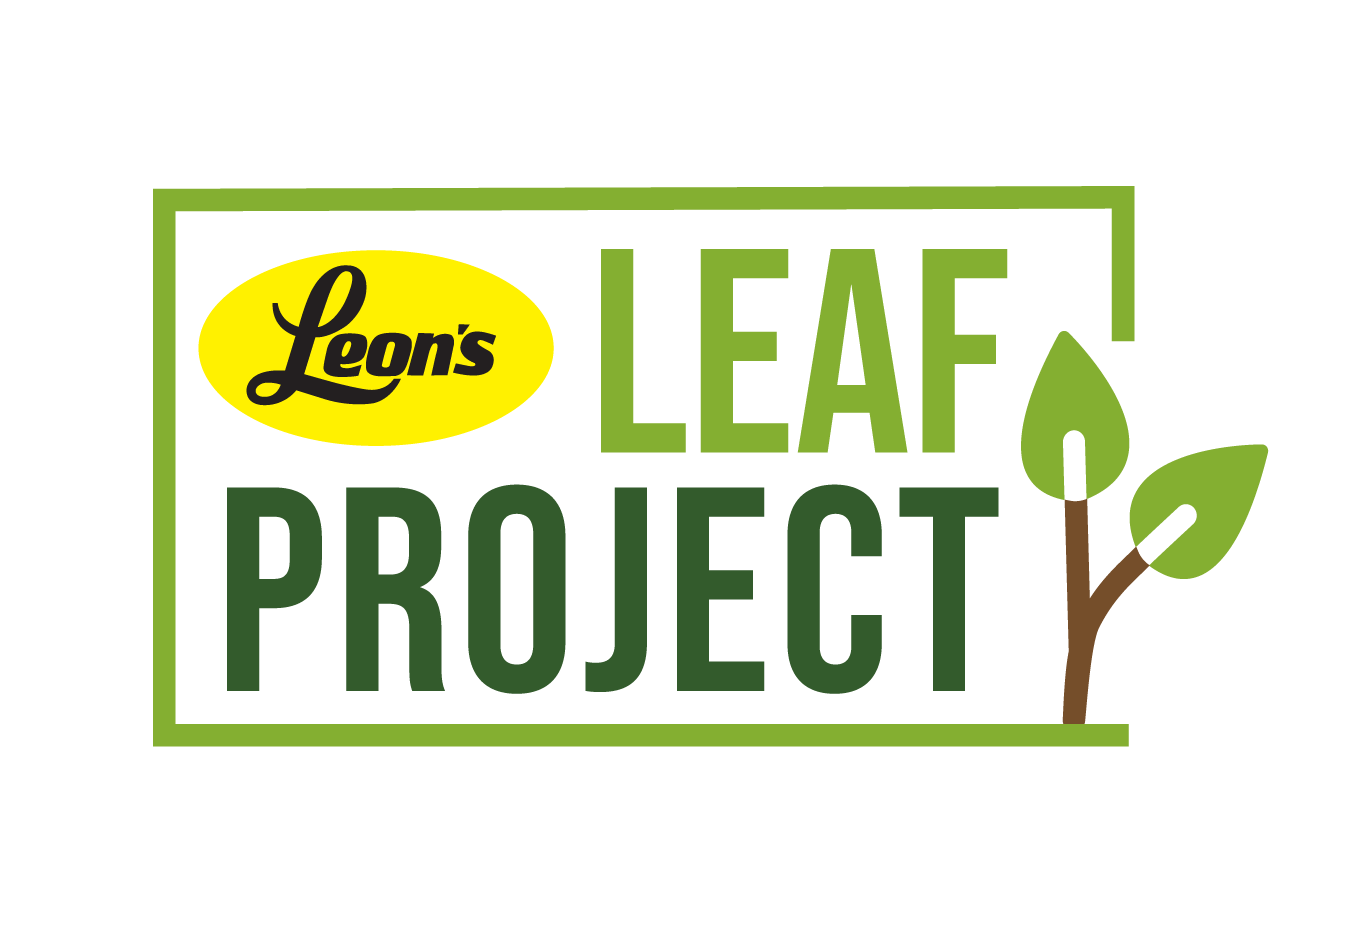 sponsor logo: Leon's leaf project